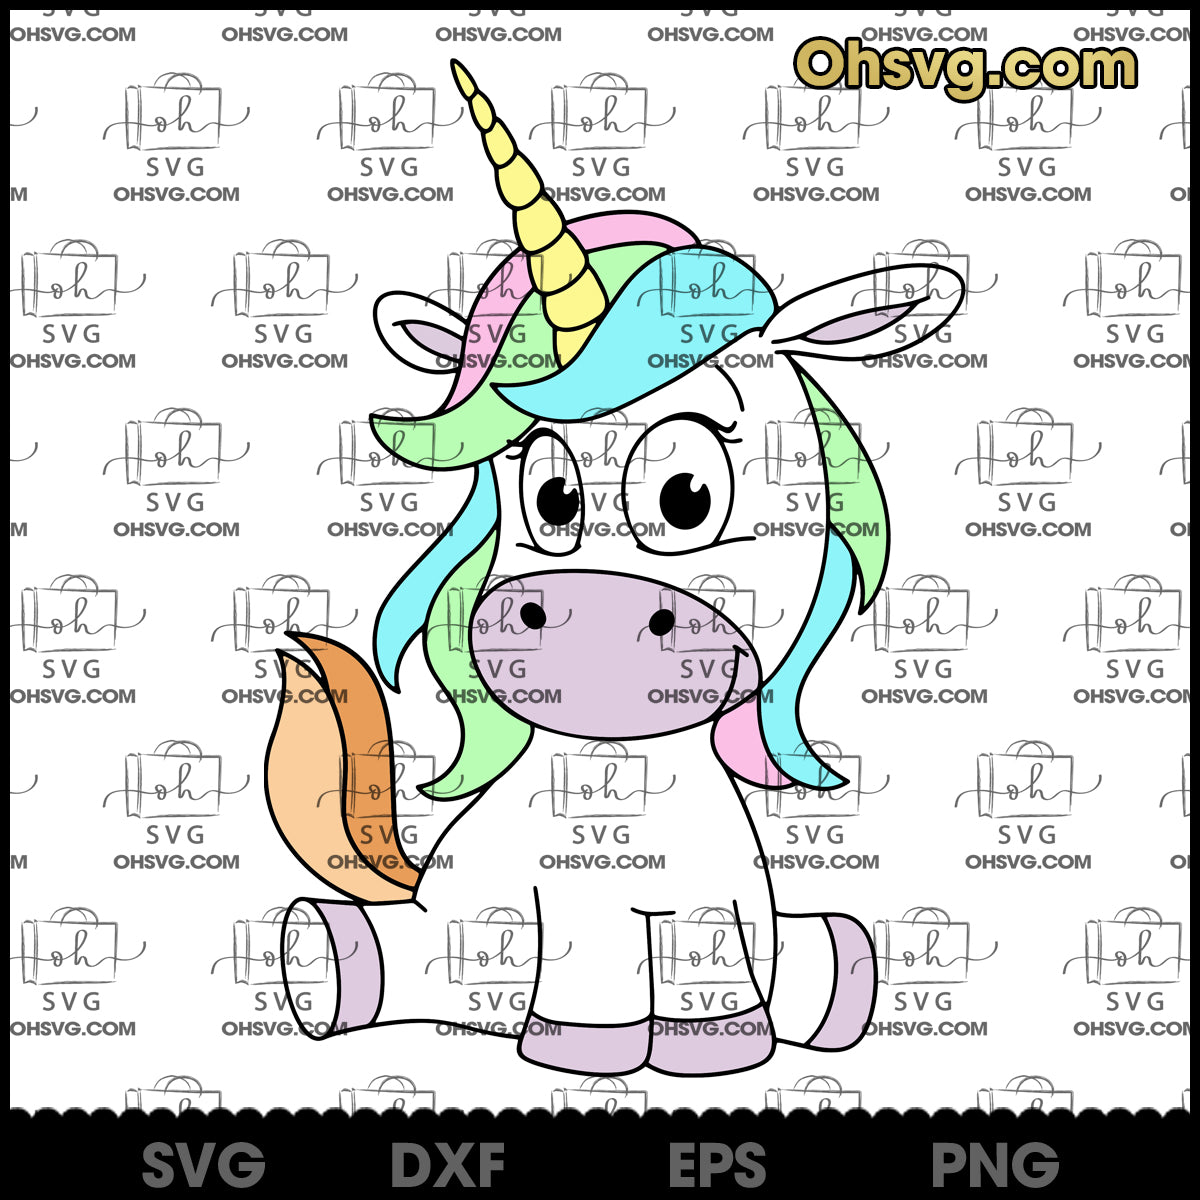 cute chibi unicorn